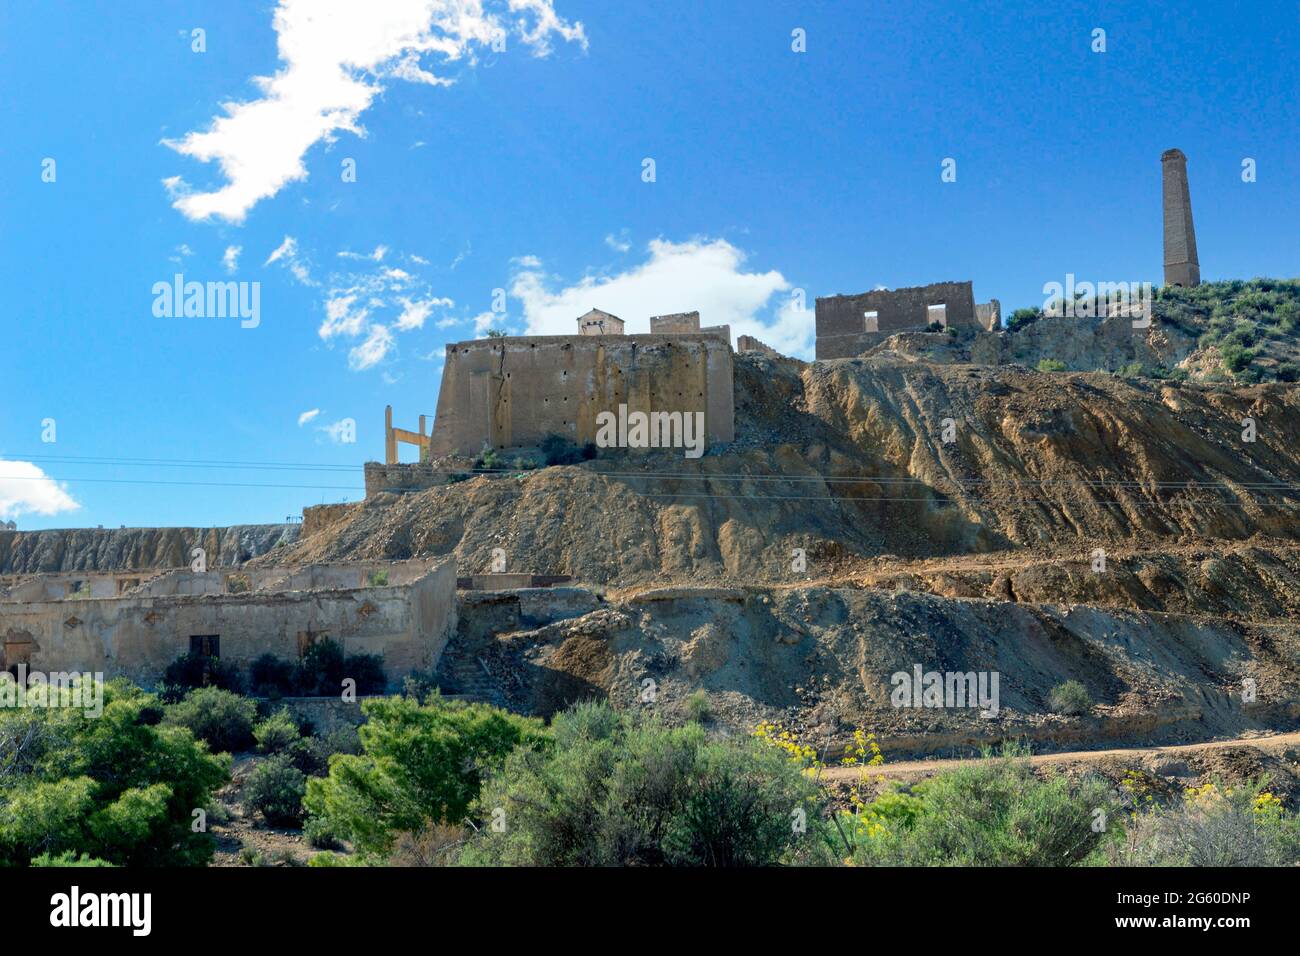 Vista panorámica de los restos de las instalaciones de minas abandonadas en Mazarrón, Murcia, España. Foto de stock